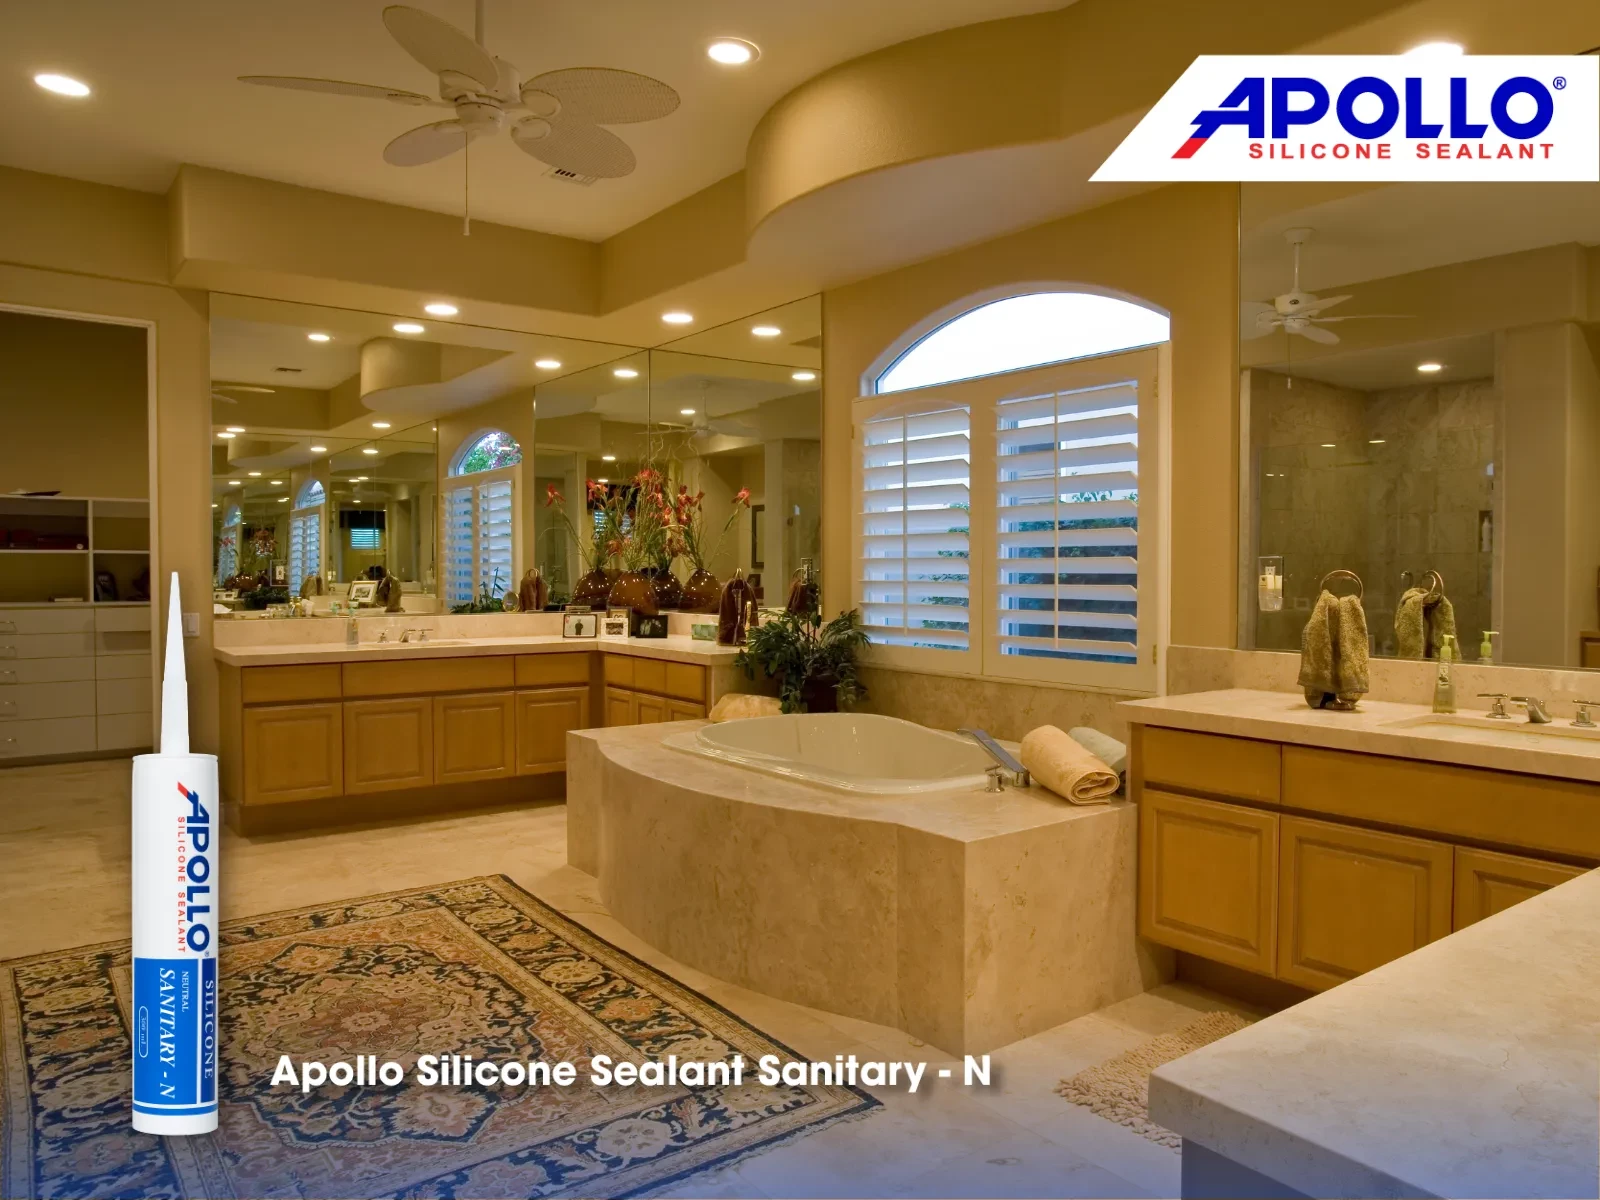 Sản phẩm chuyên dụng cho khu vực phòng tắm Apollo Sanitary - N sẽ đem đến hiệu quả chống thấm và thẩm mỹ cao cấp